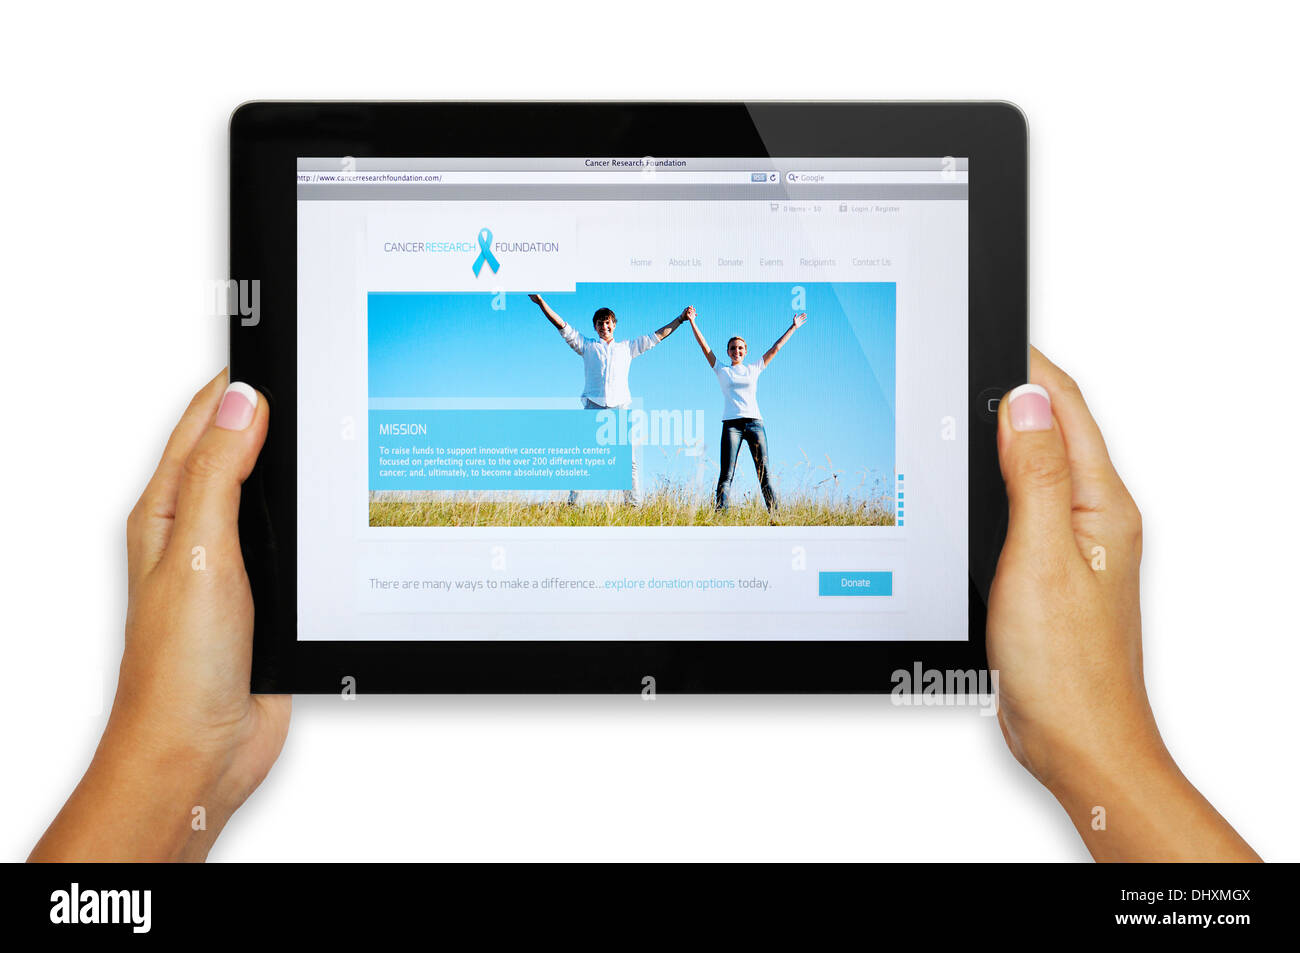 Cancer Research Foundation sito web sullo schermo di iPad Foto Stock